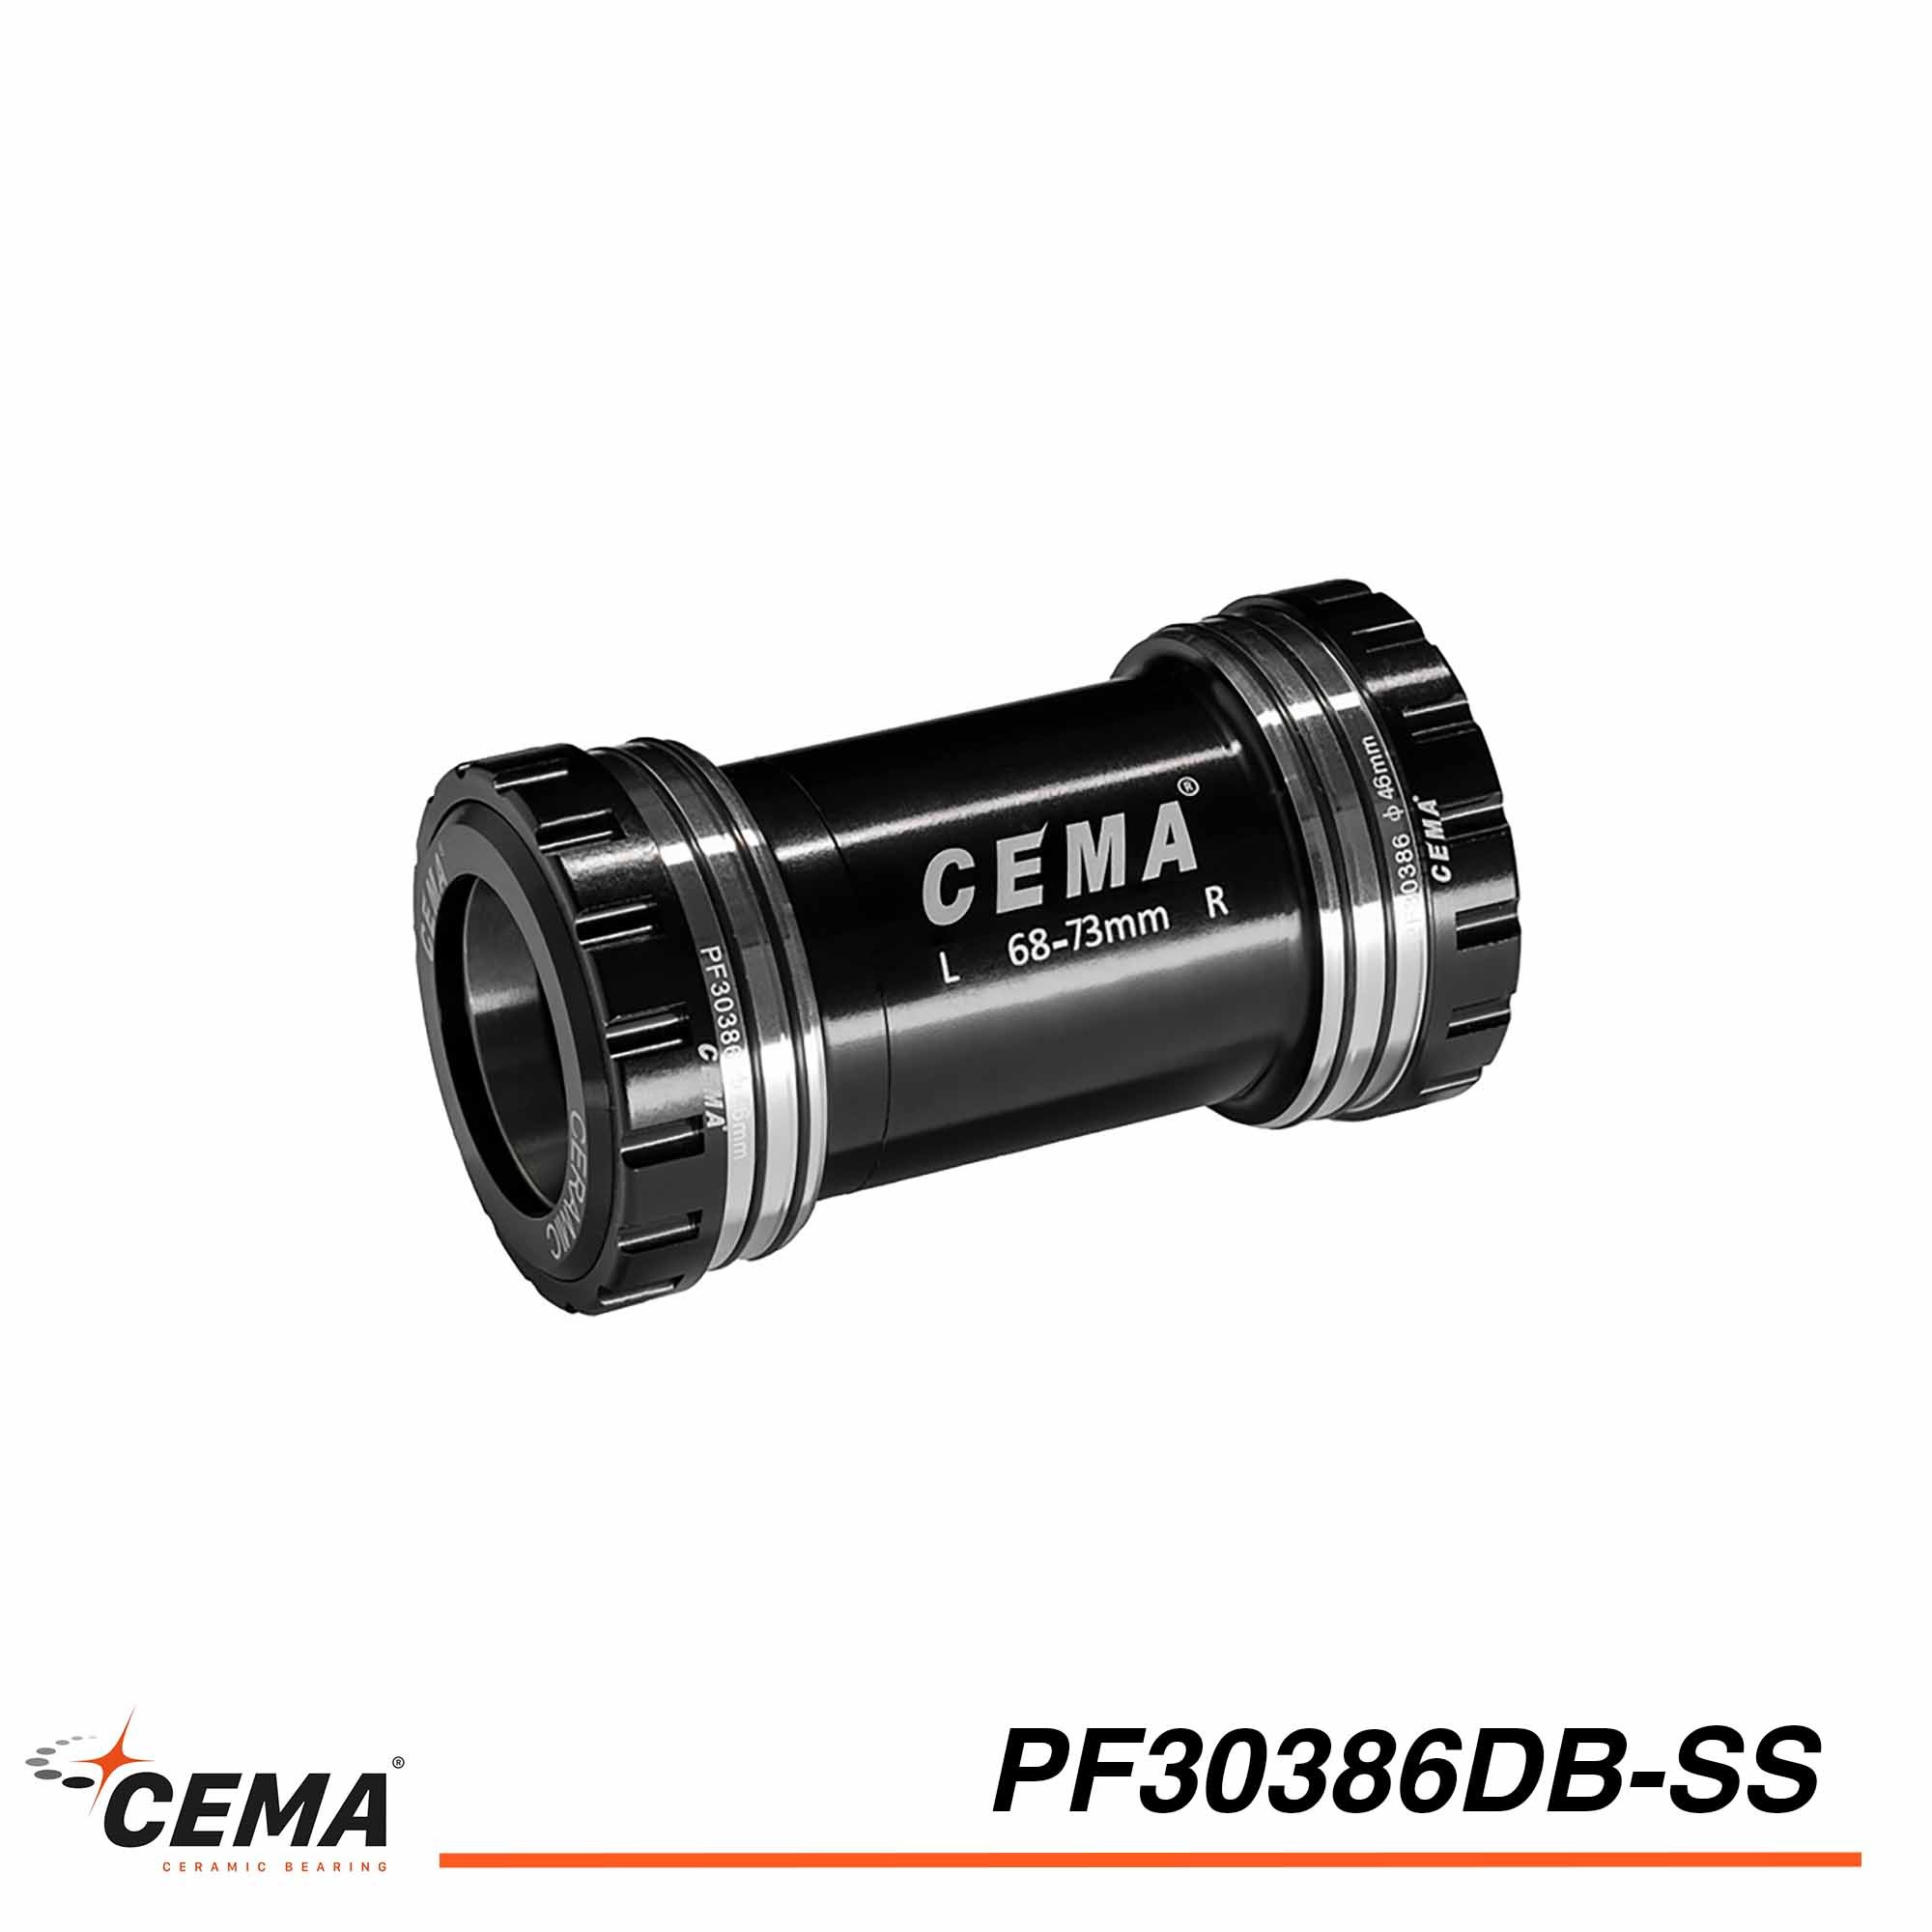 Boitier de pédalier CEMA PF30386 acier inoxydable pour SRAM DUB